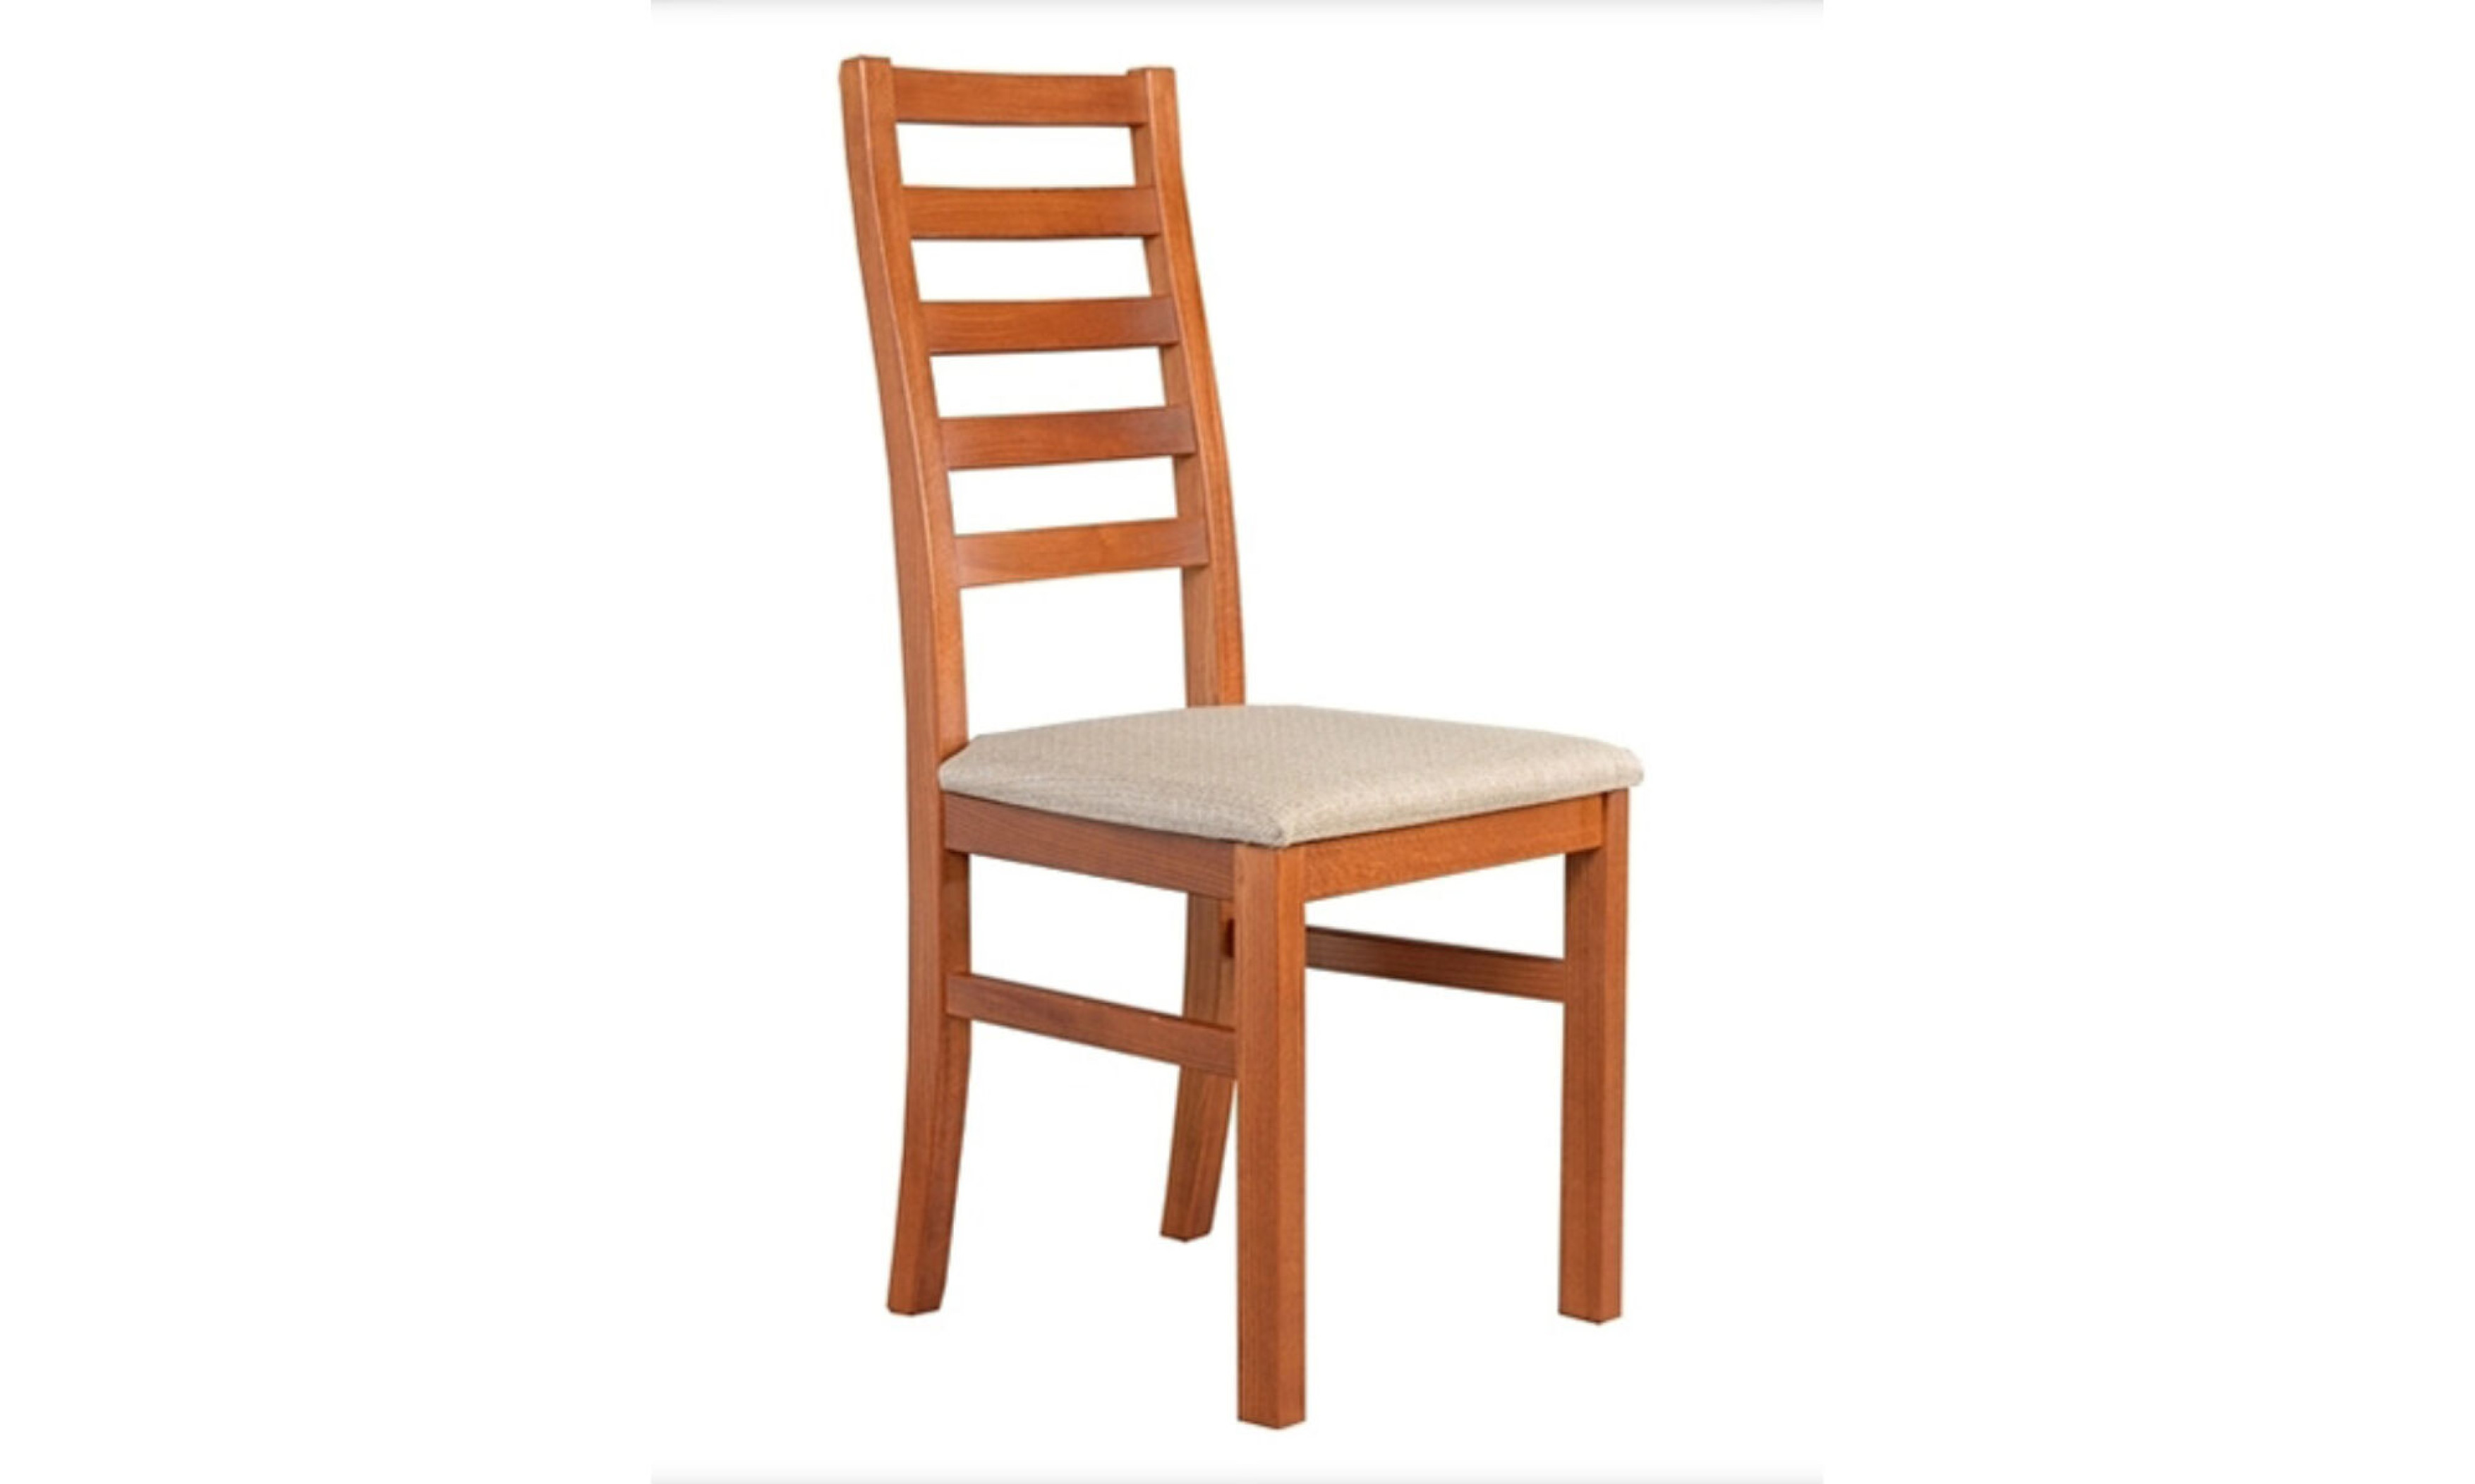 Viki szék